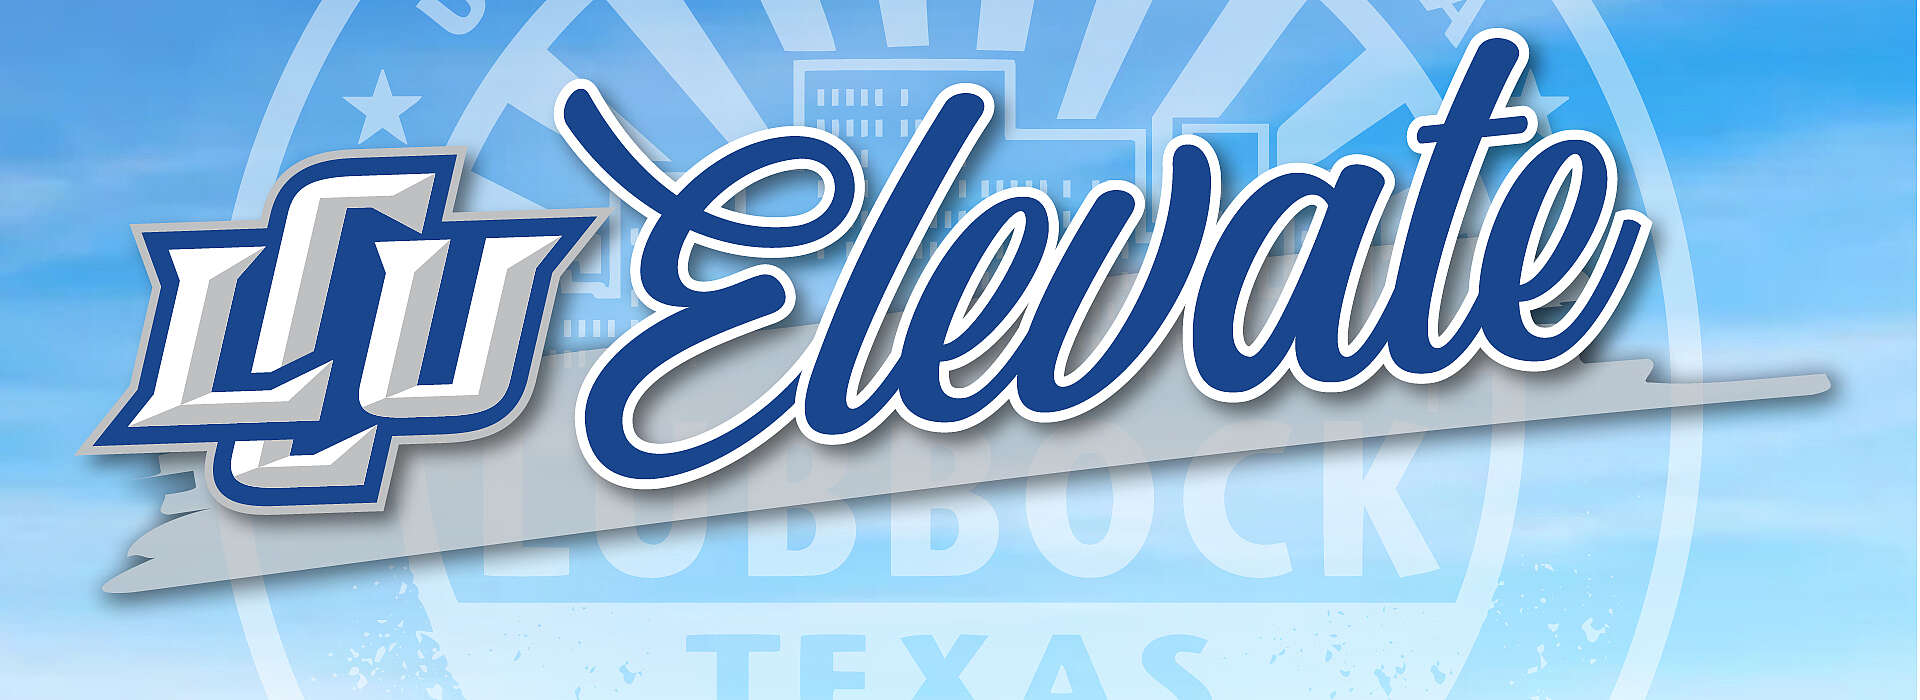 LCU Elevate logo